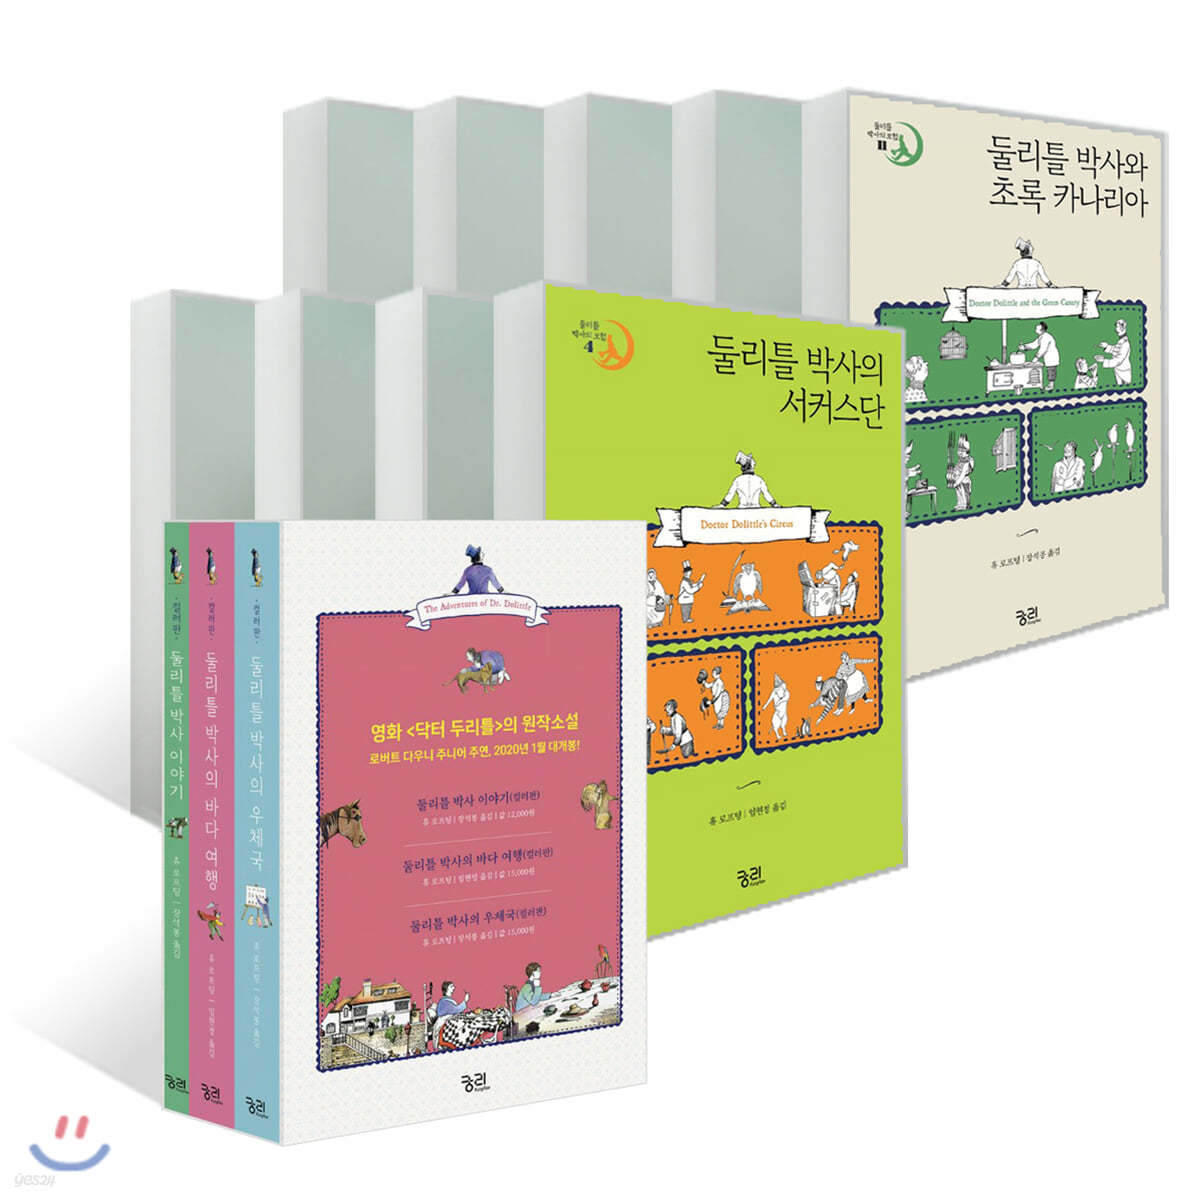 둘리틀 박사의 모험 컬러판 3권 + 흑백판 9권 세트